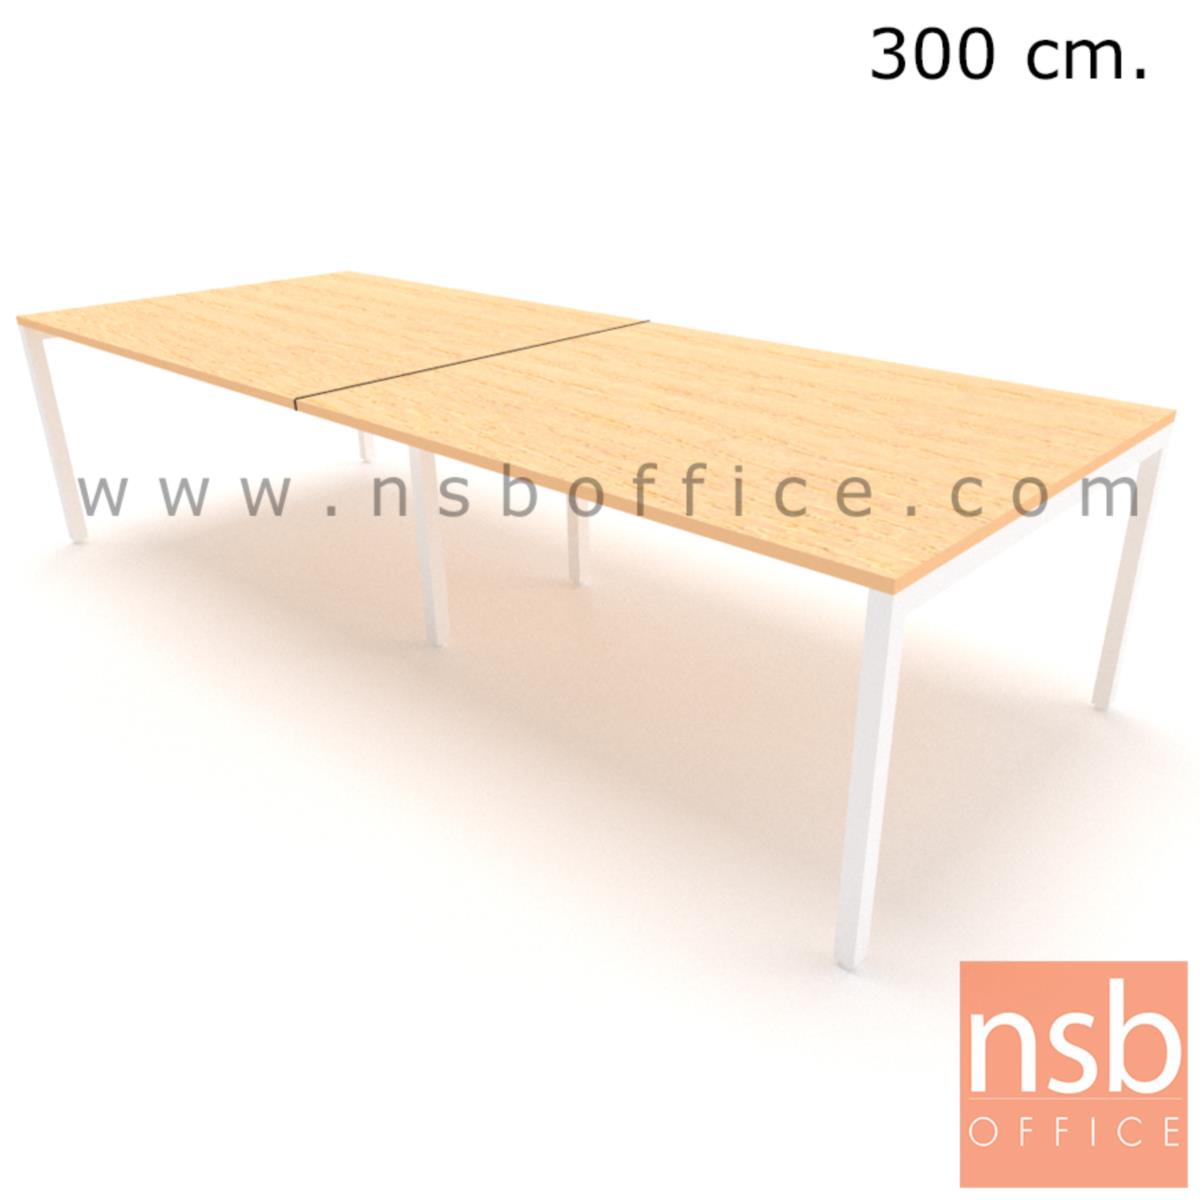 โต๊ะประชุมทรงสี่เหลี่ยมยาว รุ่น moss (มอส) ขนาด 300W, 360W, 400W, 480W และ 600W cm. ขาเหล็ก